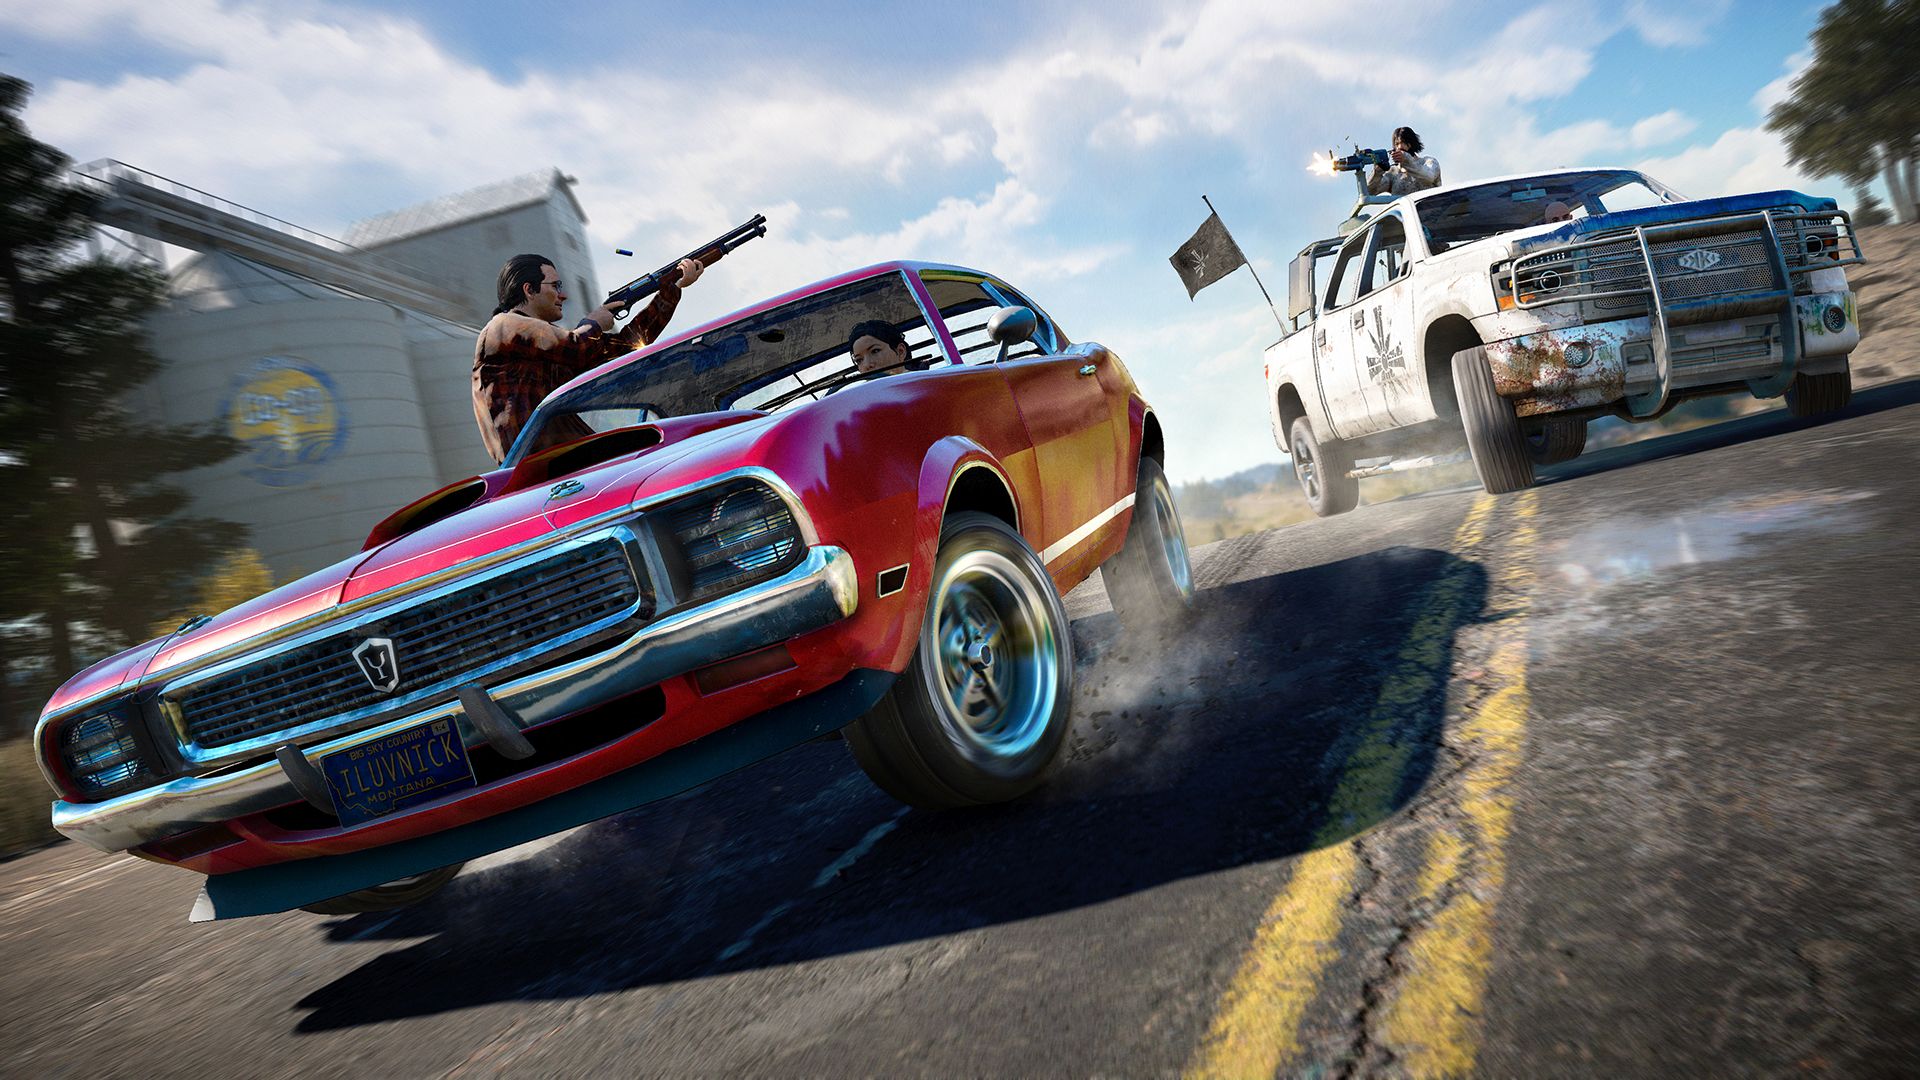 Far Cry 7: novos rumores especulam sobre gráficos e história de